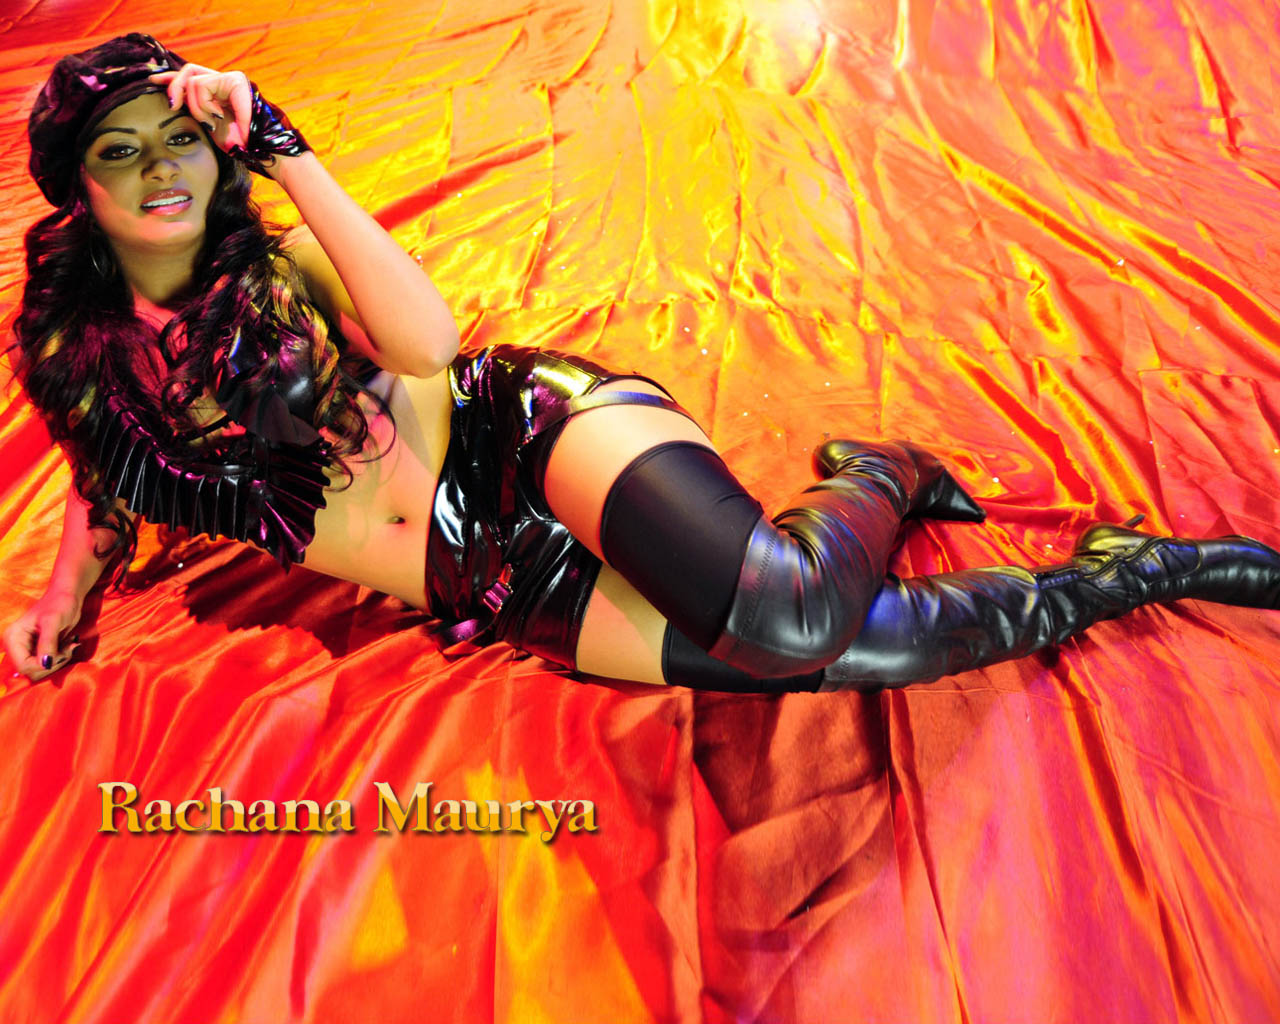 rachana maurya sexy legs